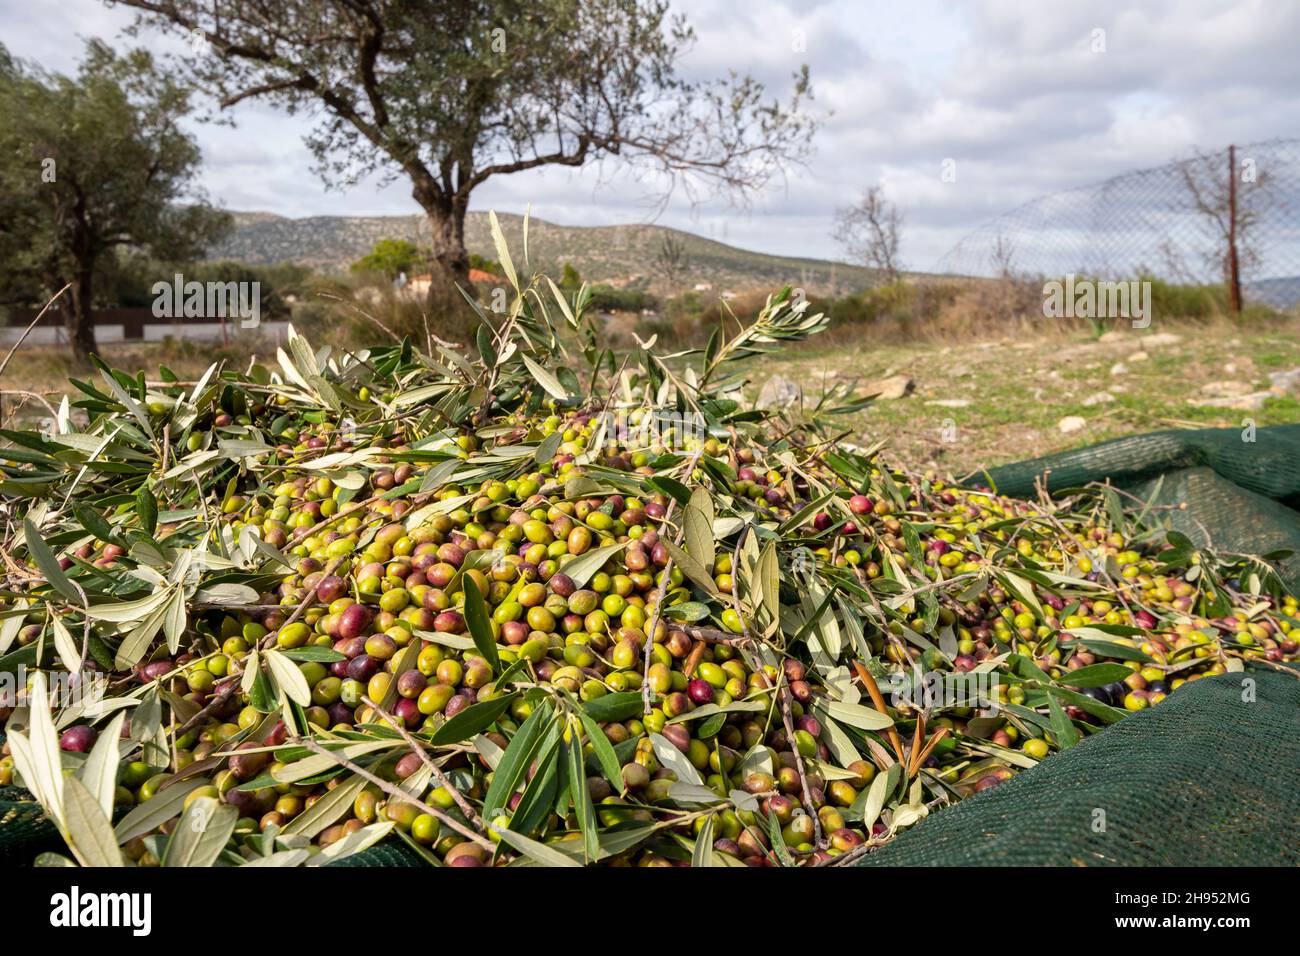 Mains qui collectent et nettoient les olives pendant la récolte d'olives avec des filets d'orange à Keratea en Grèce Banque D'Images